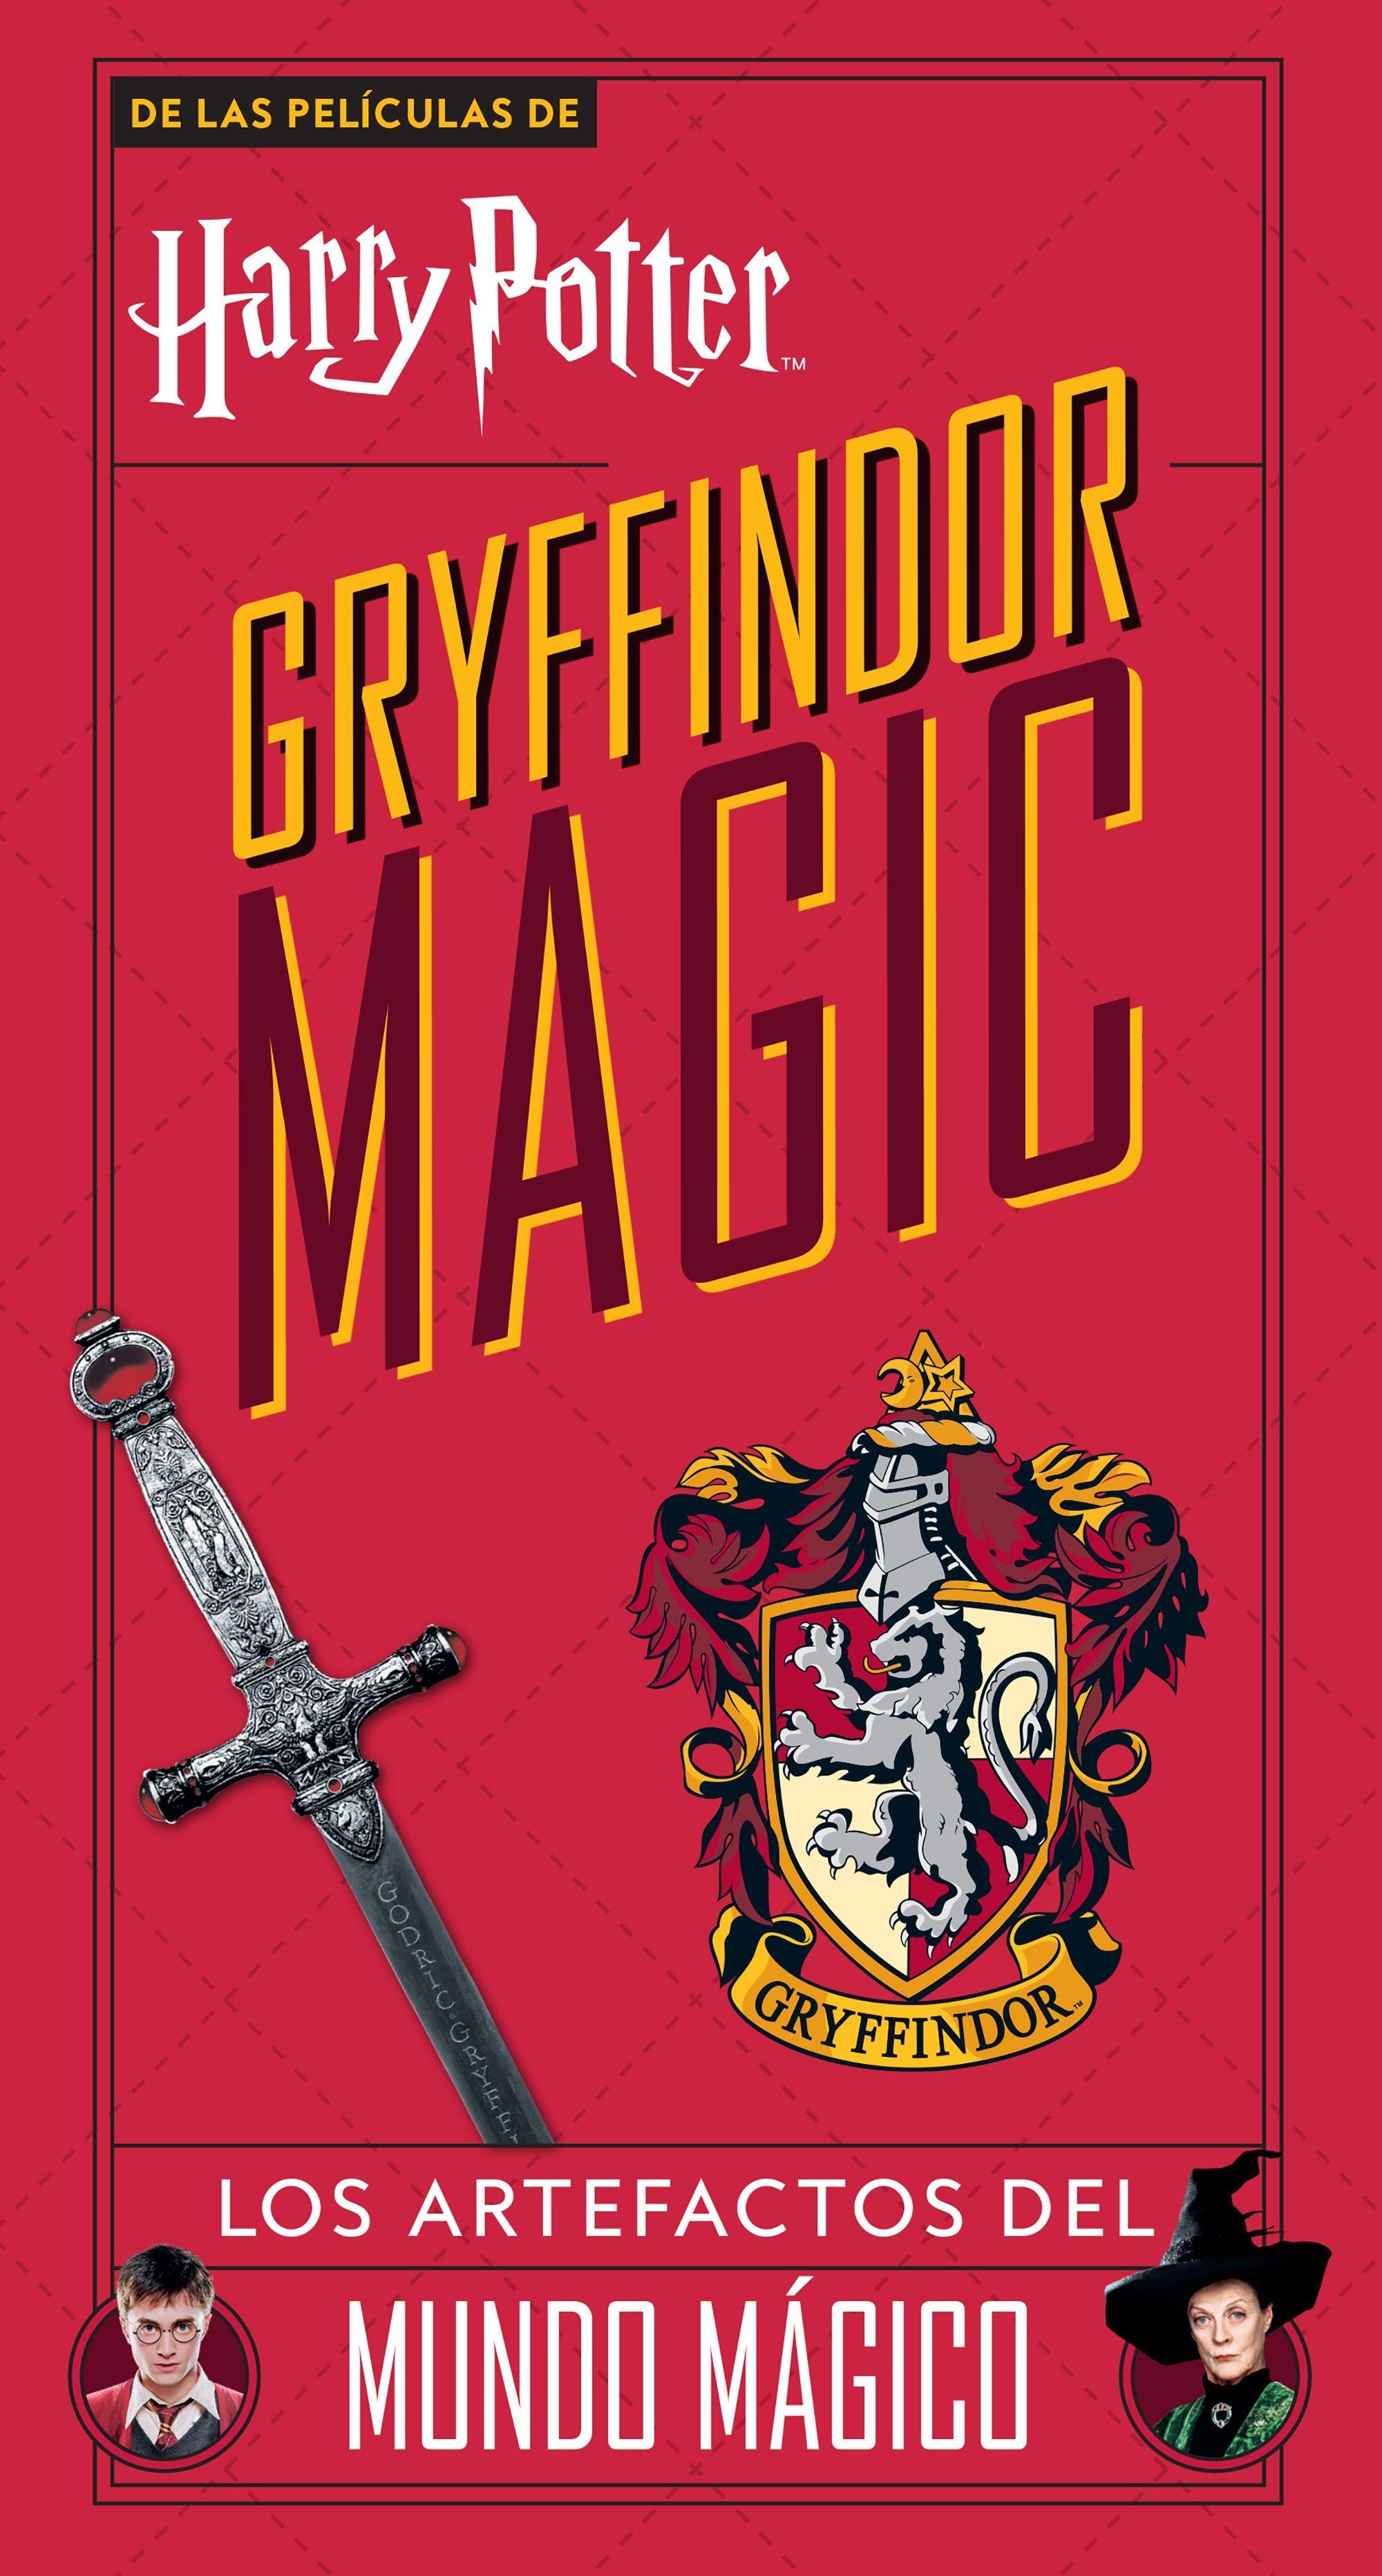 Harry Potter Gryffindor Magic "Los Artefactos del Mundo Mágico". 